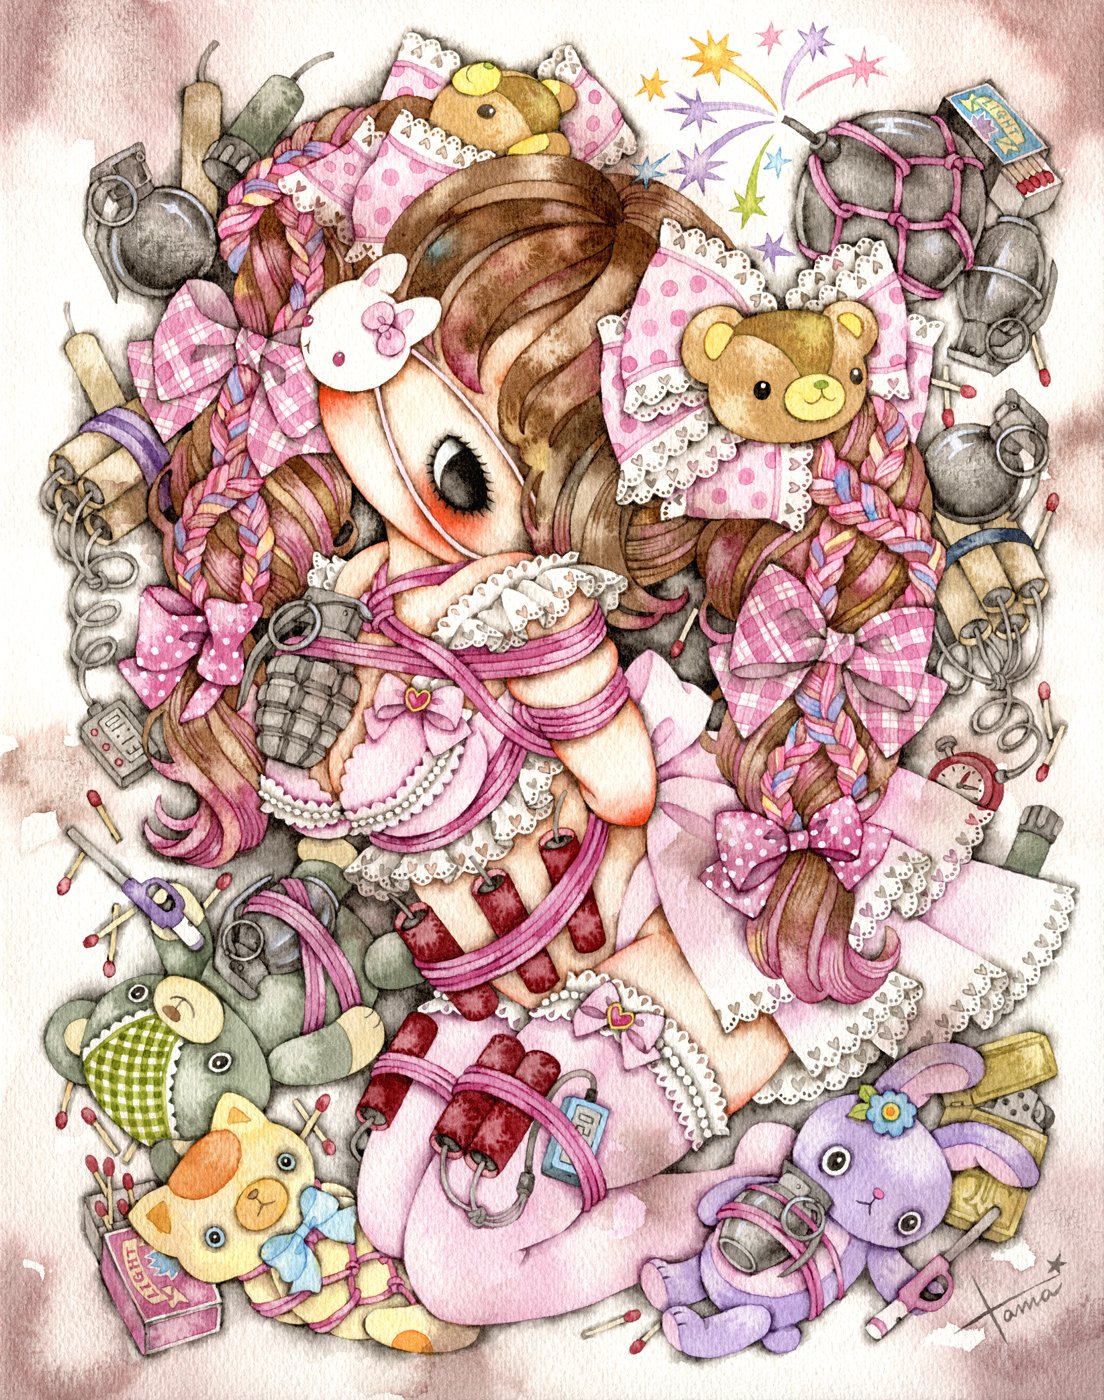 Musical Cat・少女主義的水彩画家たまコラボ ドレス タイツ セット-